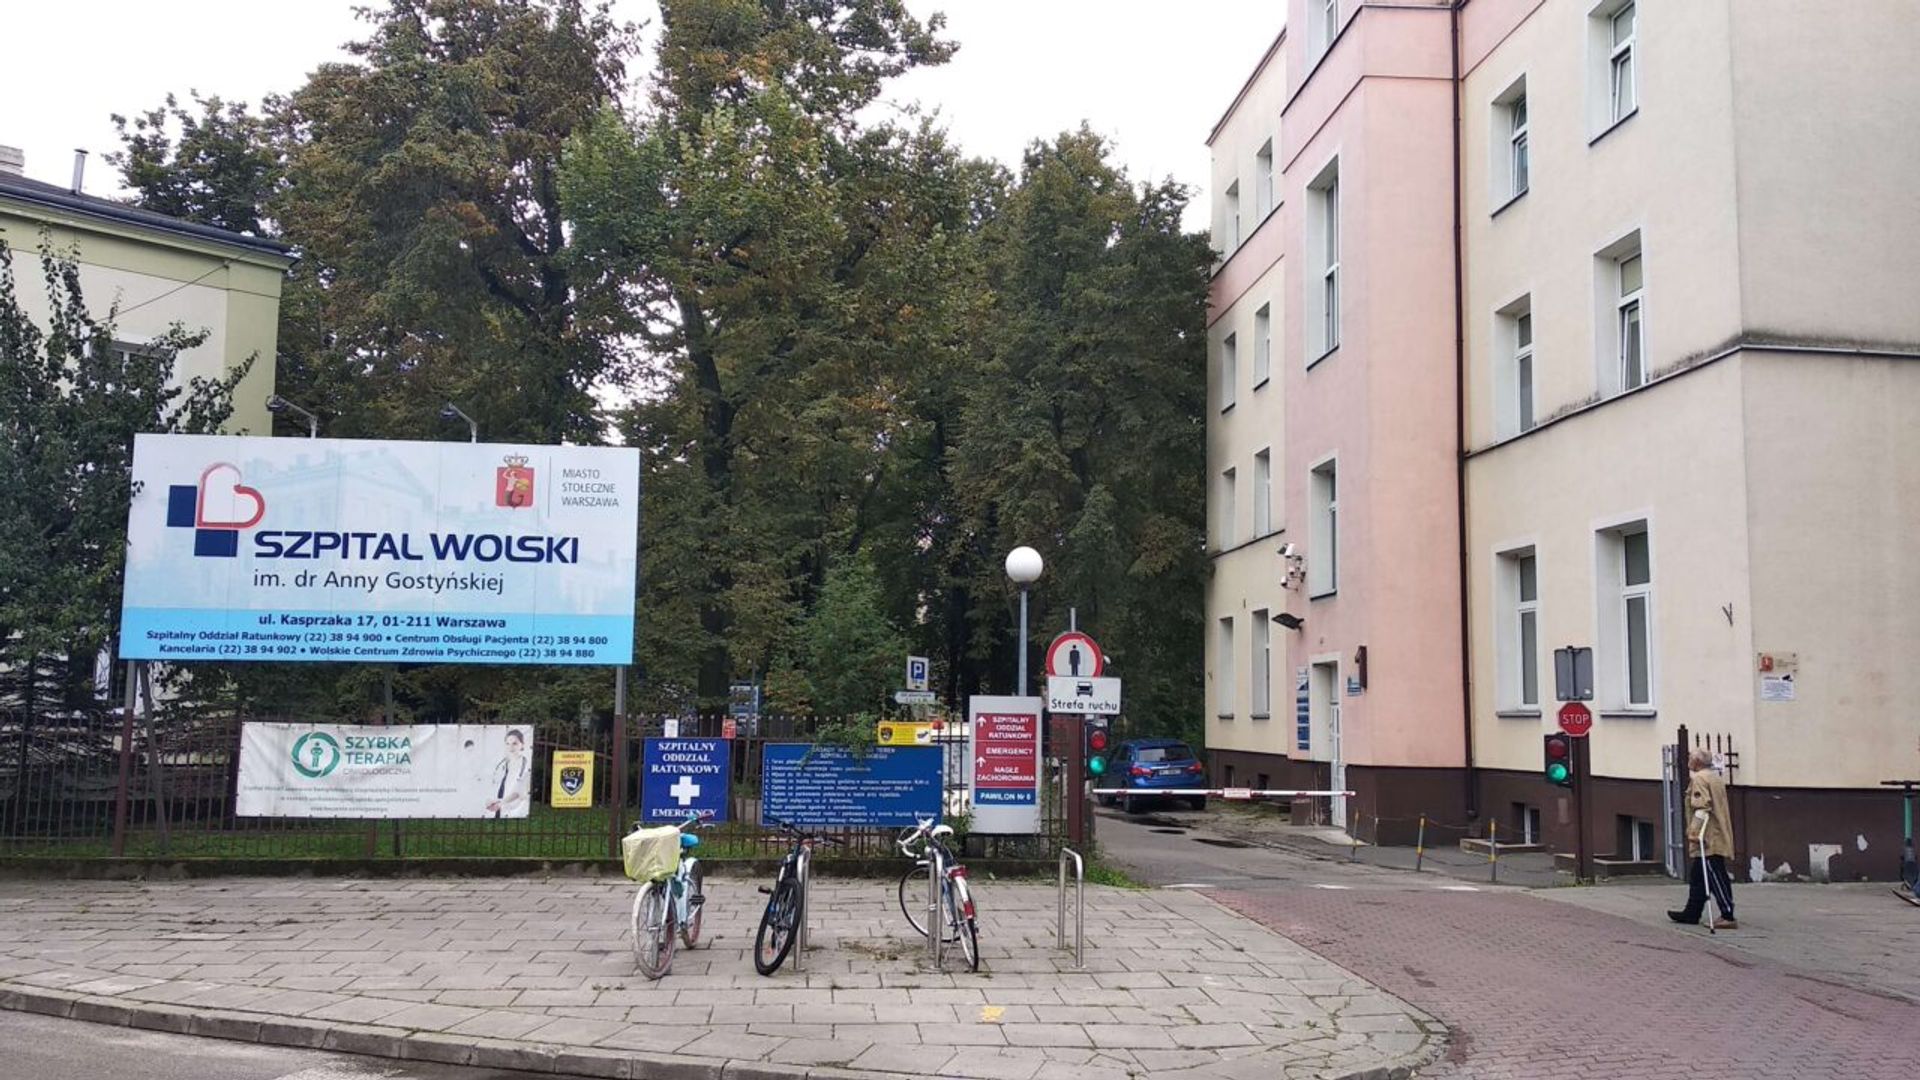 Został uchwalony plan miejscowy rejonu Szpitala Wolskiego w Warszawie